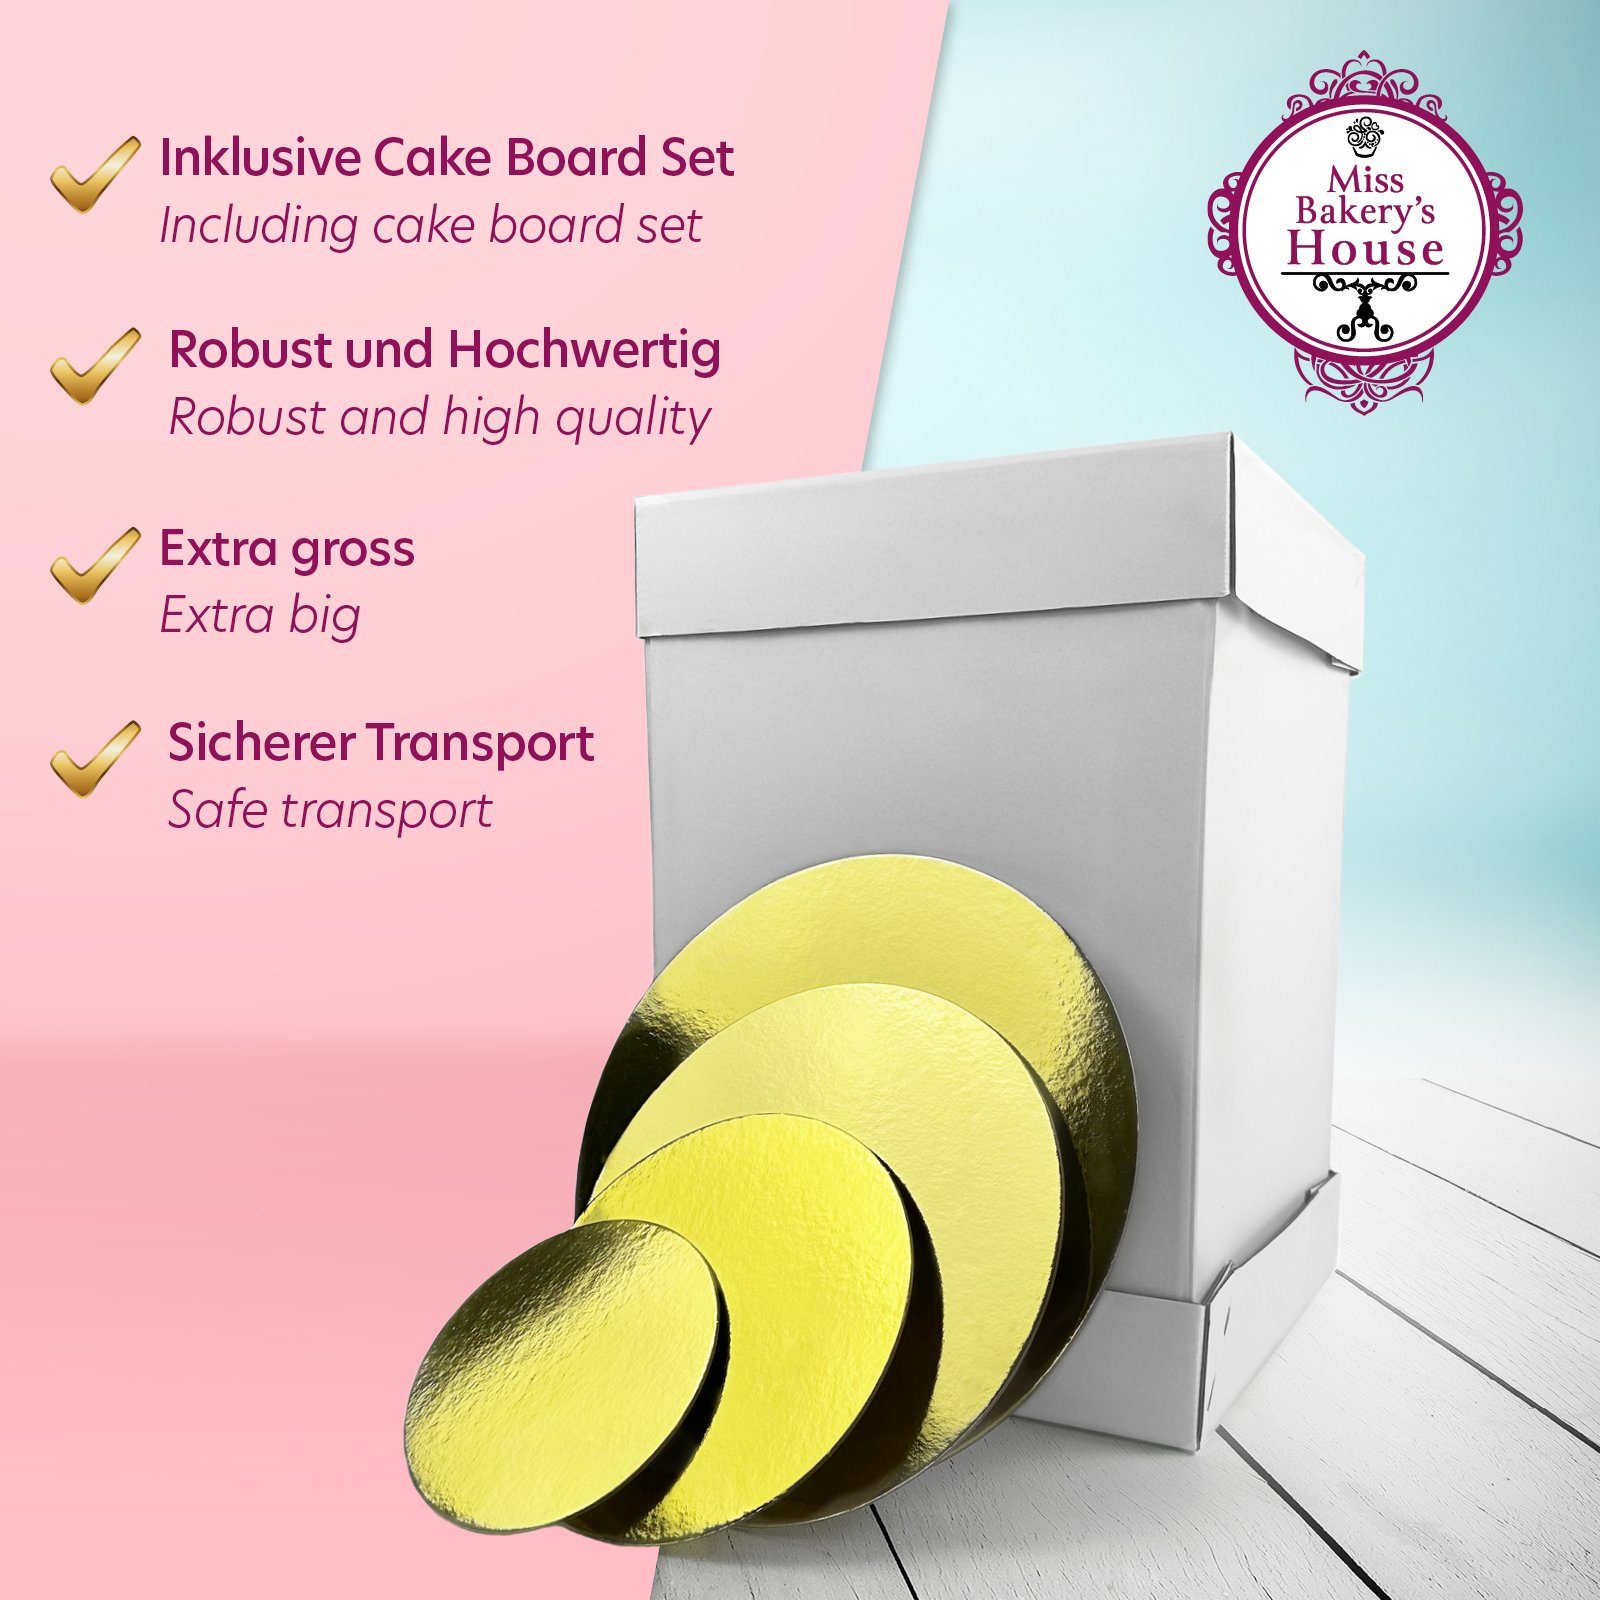 Kuchentransportbox Bakery's & Miss + sicher Tortenunterlagen, Cake transportieren Board Set), hoch Set, weiß/silber/gold (Kartonbox Gebäck House Box und aufbewahren Tortenkarton, Cake